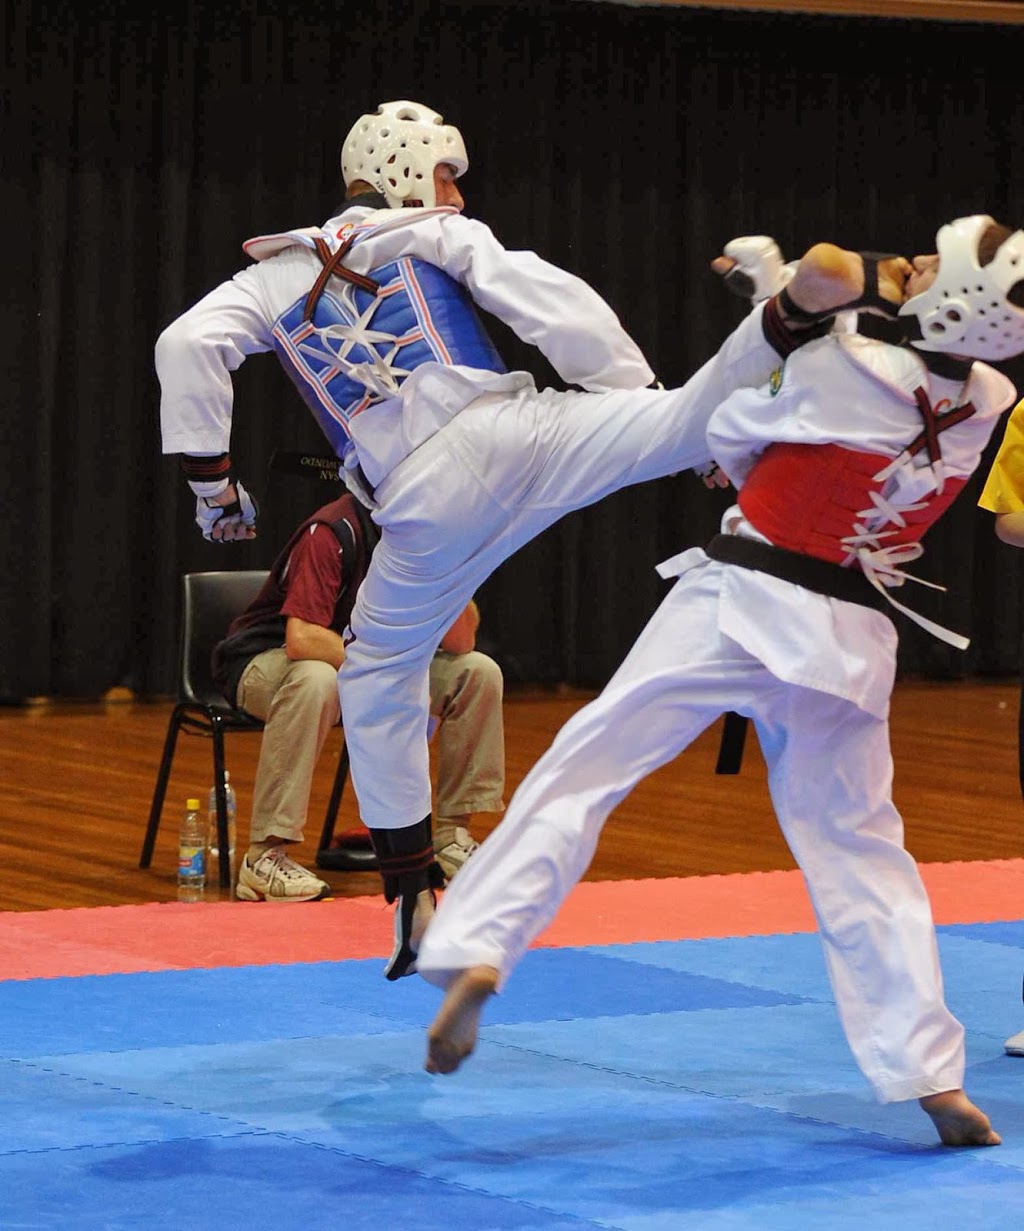 San Taekwondo | health | Fitness Matters Moolooah, 3 Karanne Dr, Moolooah Valley QLD 4553, Australia | 0437571540 OR +61 437 571 540